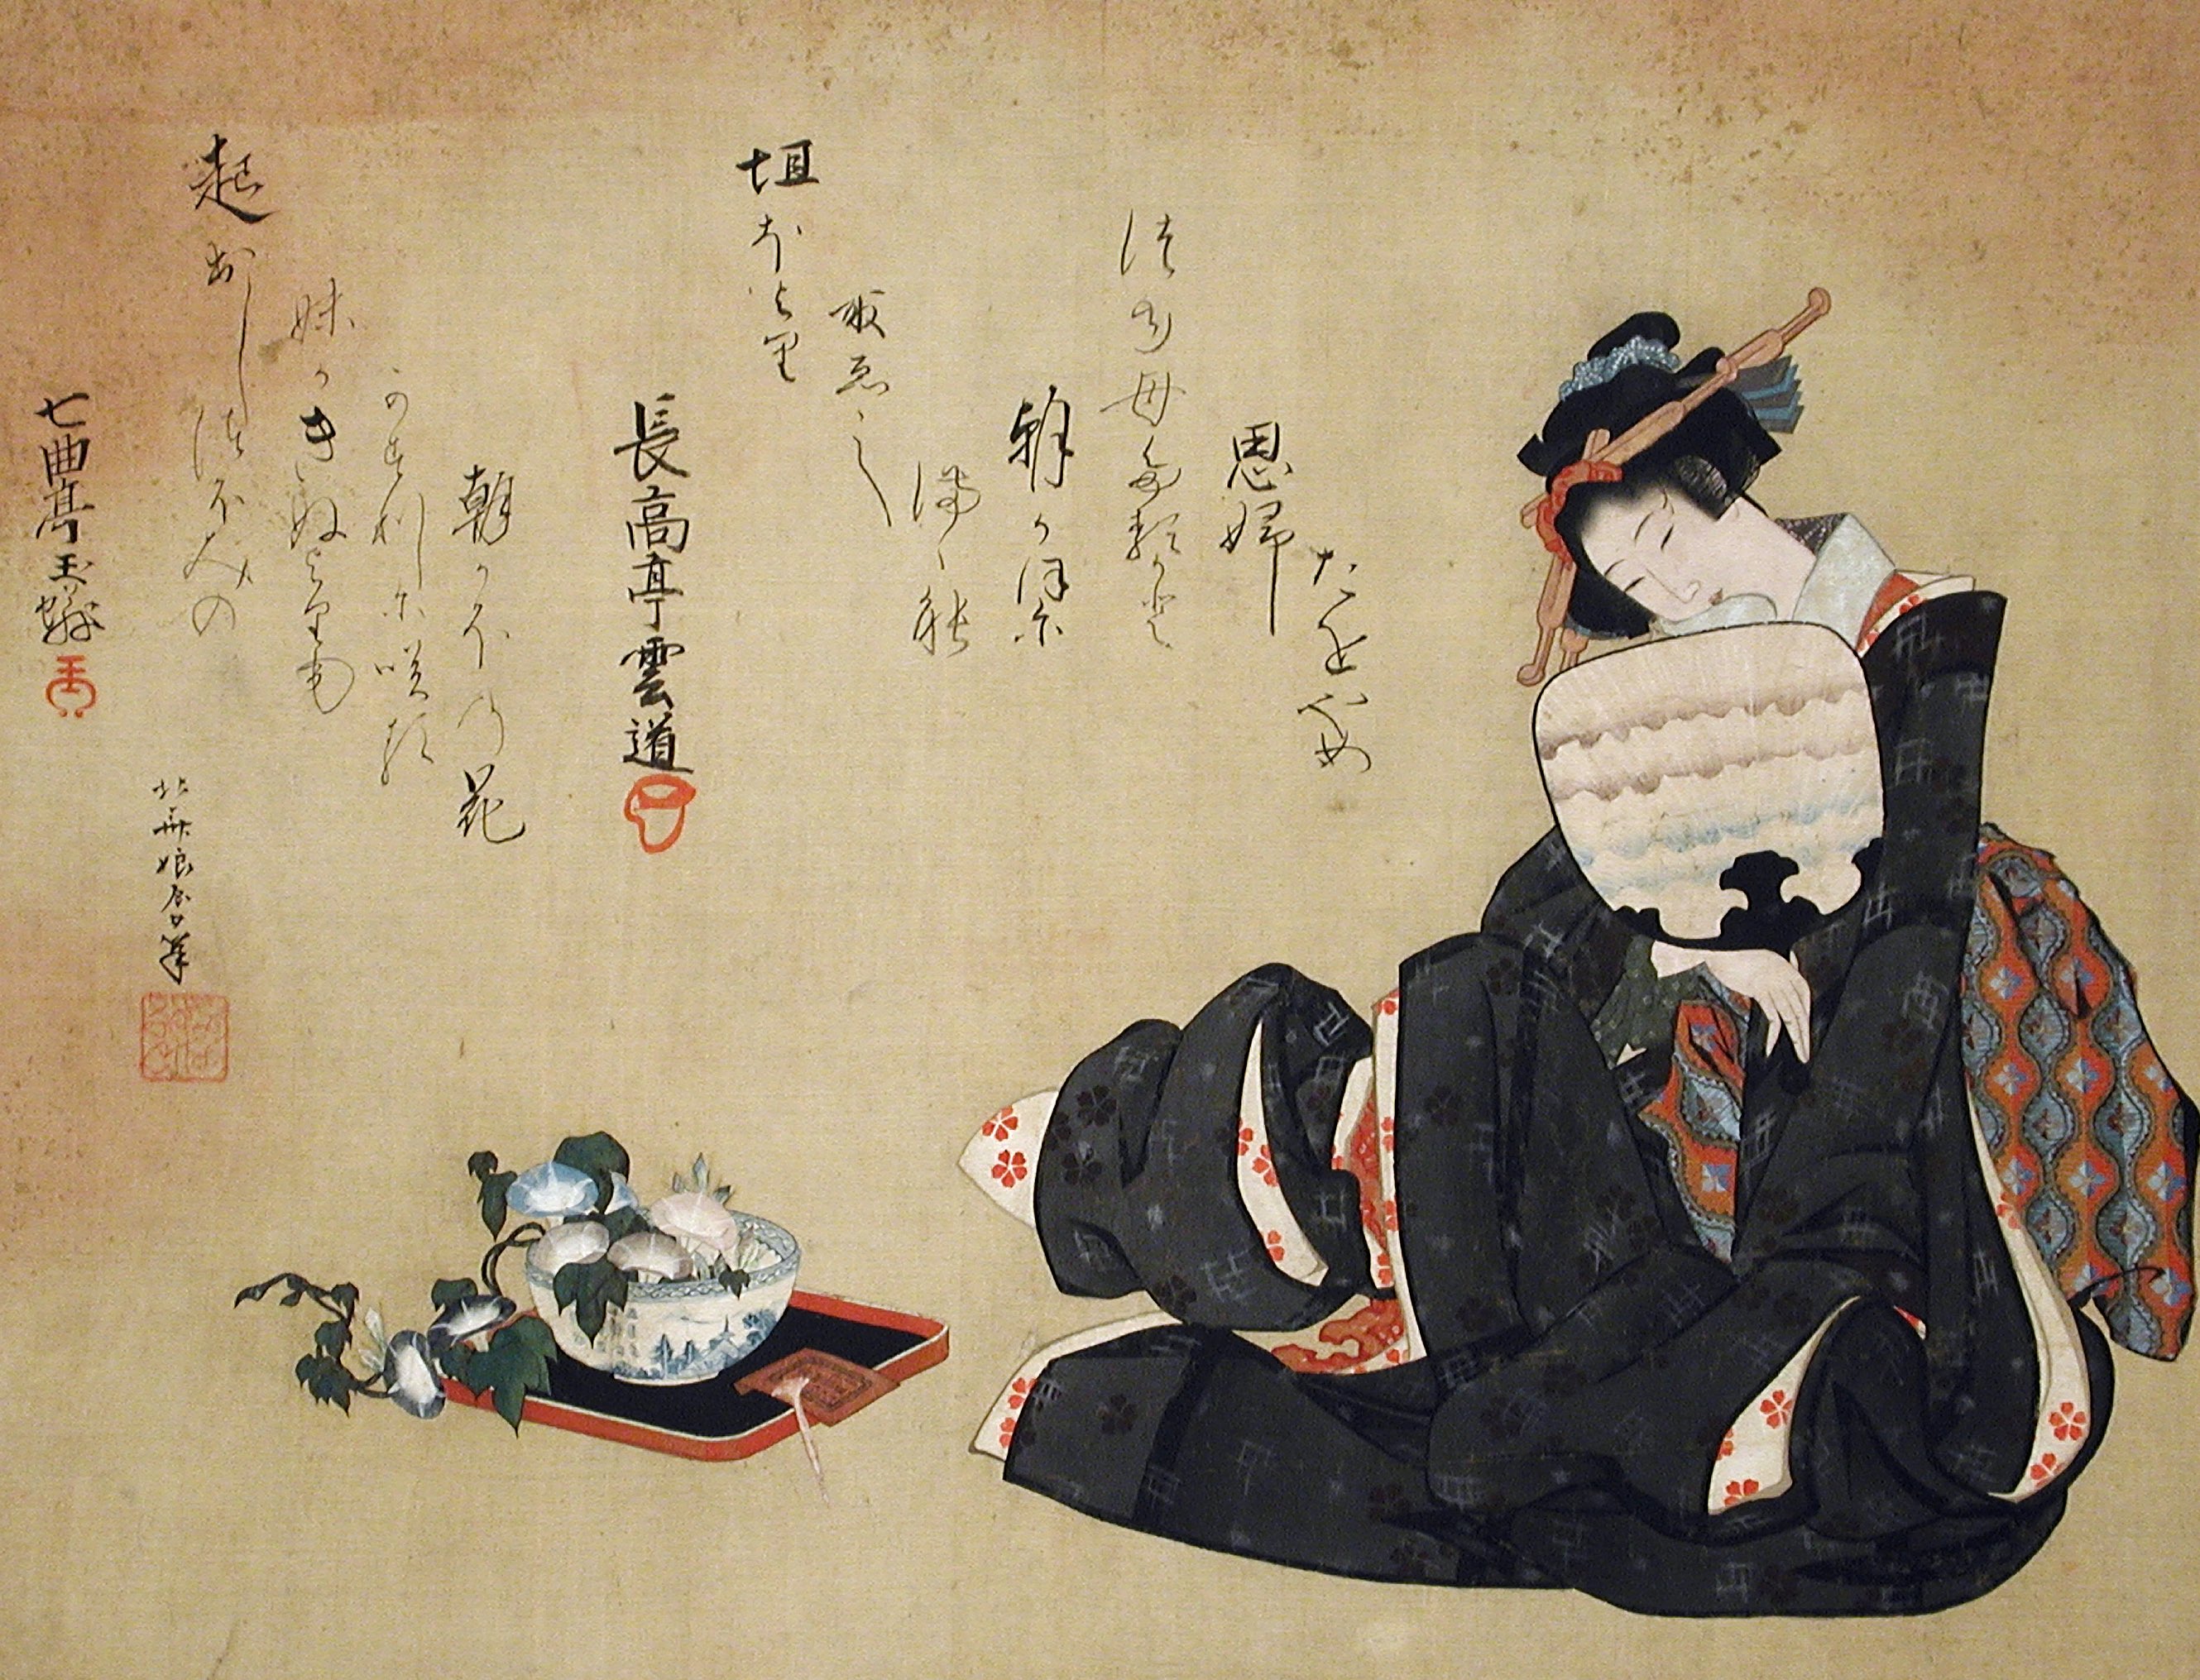 Femme et gloires du matin by Katsushika Ōi - Vers 1820 - 34.2 x 44.8 cm LACMA, ou Musée d'art du comté de Los Angeles